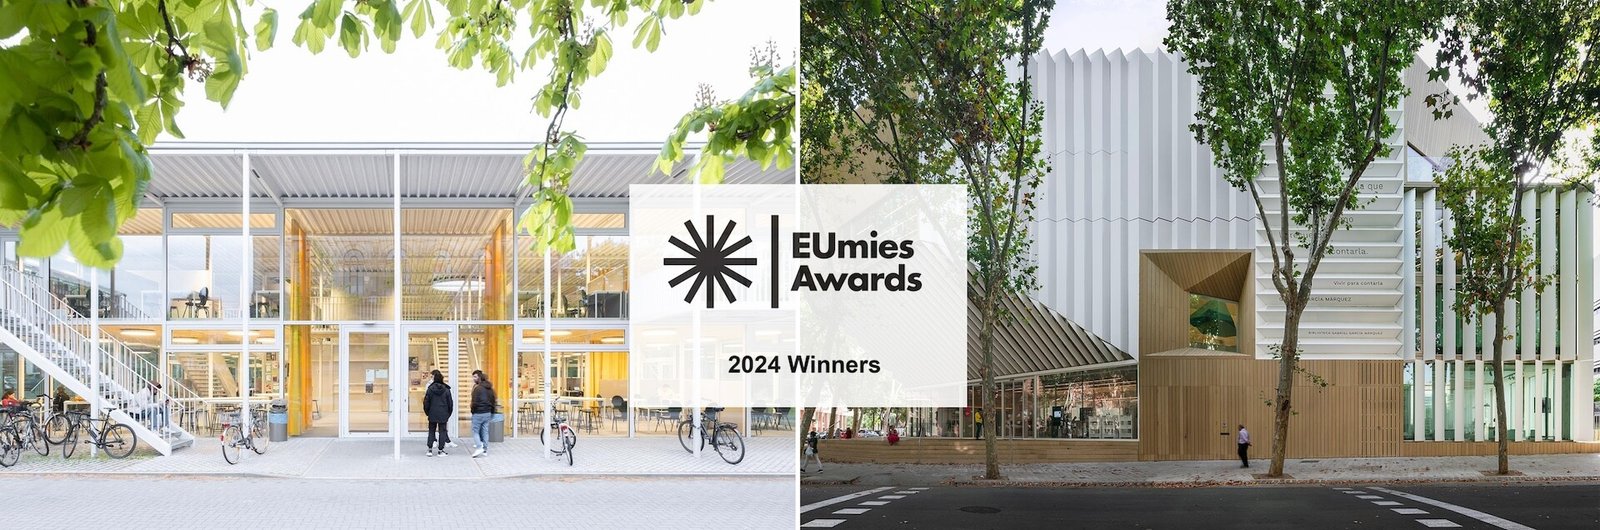 Um Pavilhão de Estudos e uma Biblioteca são os vencedores do Prémio Mies van der Rohe 2024